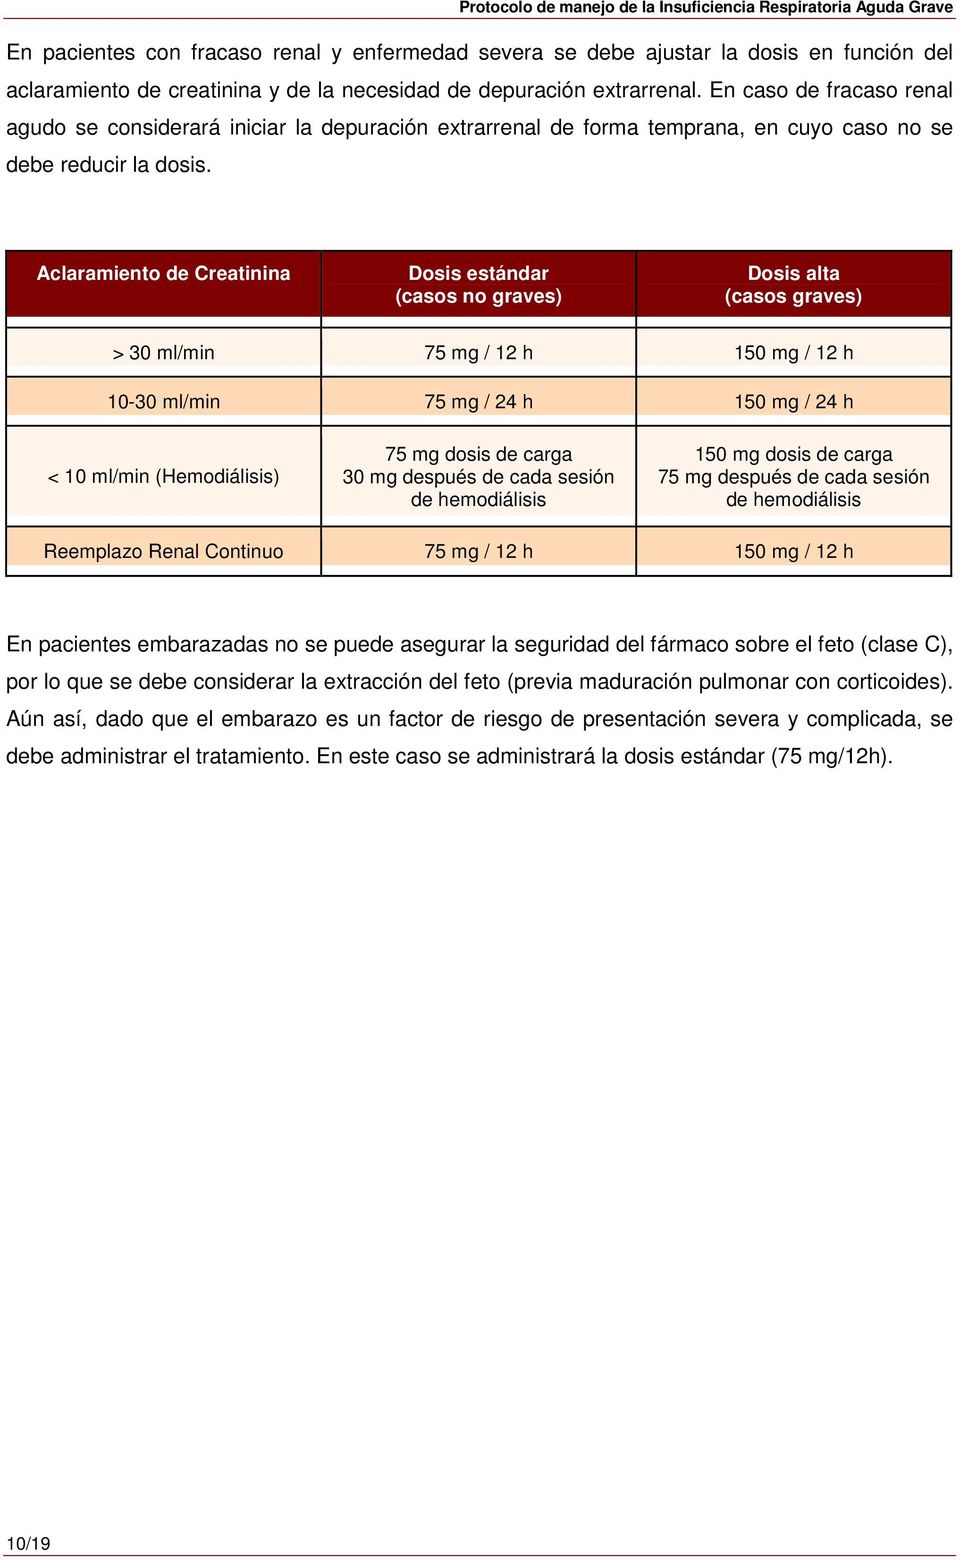 Aclaramiento de Creatinina Dosis estándar (casos no graves) Dosis alta (casos graves) > 30 ml/min 75 mg / 12 h 150 mg / 12 h 10-30 ml/min 75 mg / 24 h 150 mg / 24 h < 10 ml/min (Hemodiálisis) 75 mg